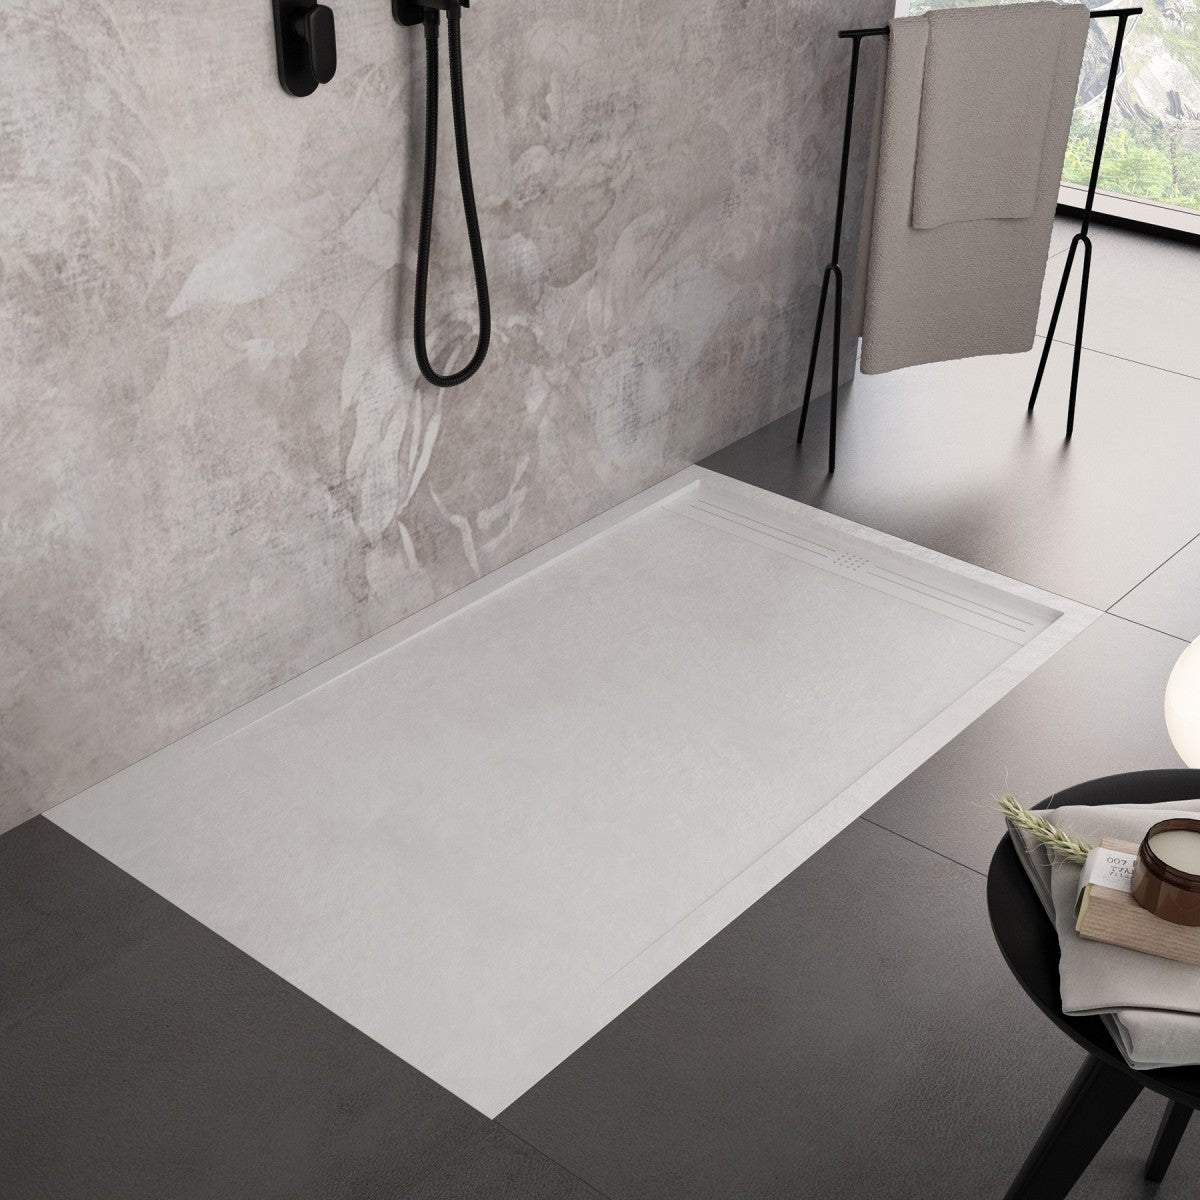 Piatto doccia in marmo resina bianco pietra cemento grid, misura 80x130